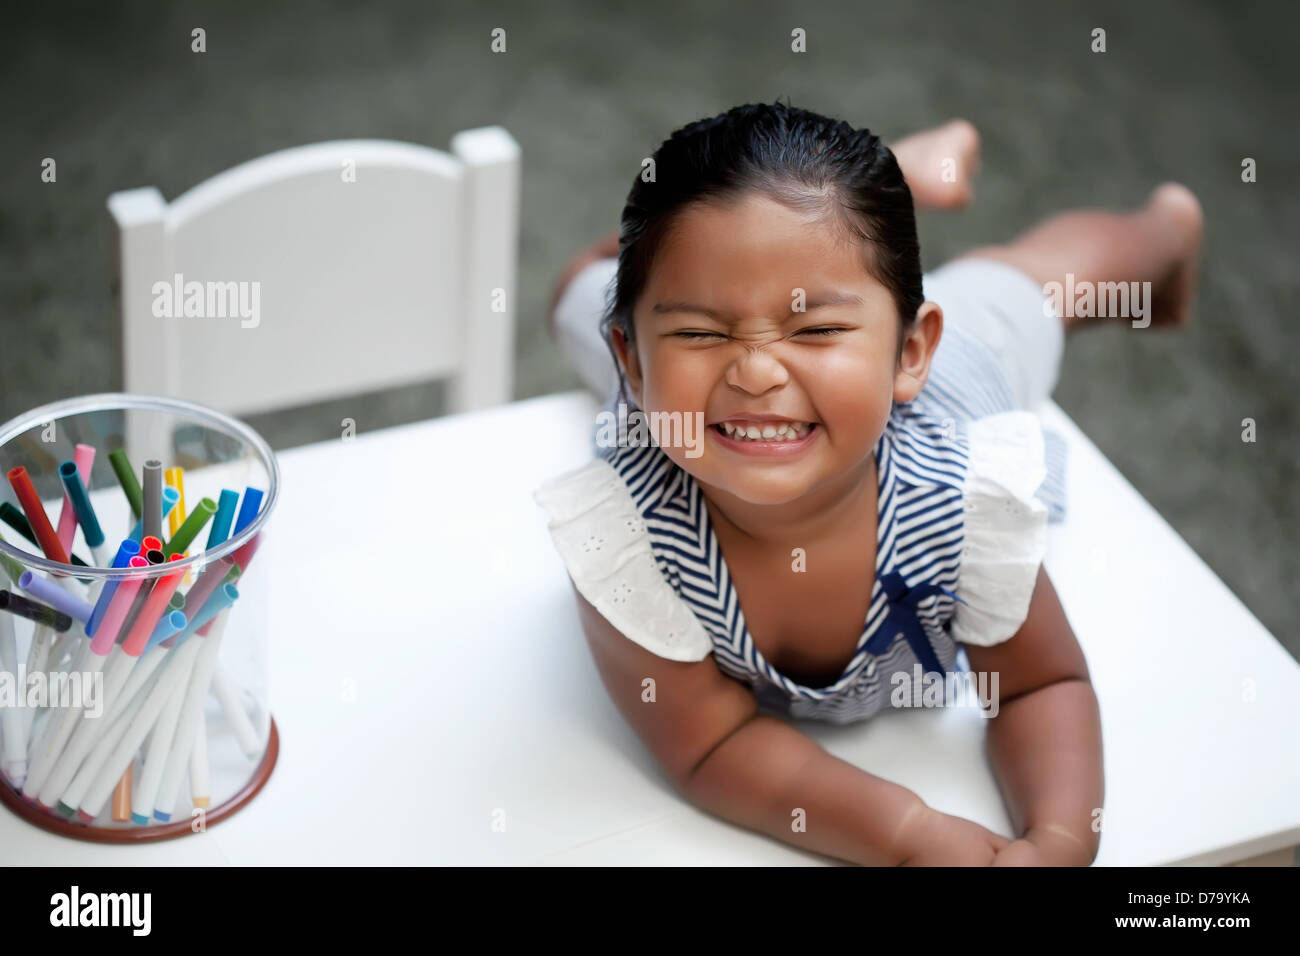 Bambina con sorriso carino recante sulla parte superiore di un bianco kiddie tabella con marcatori colorati Foto Stock